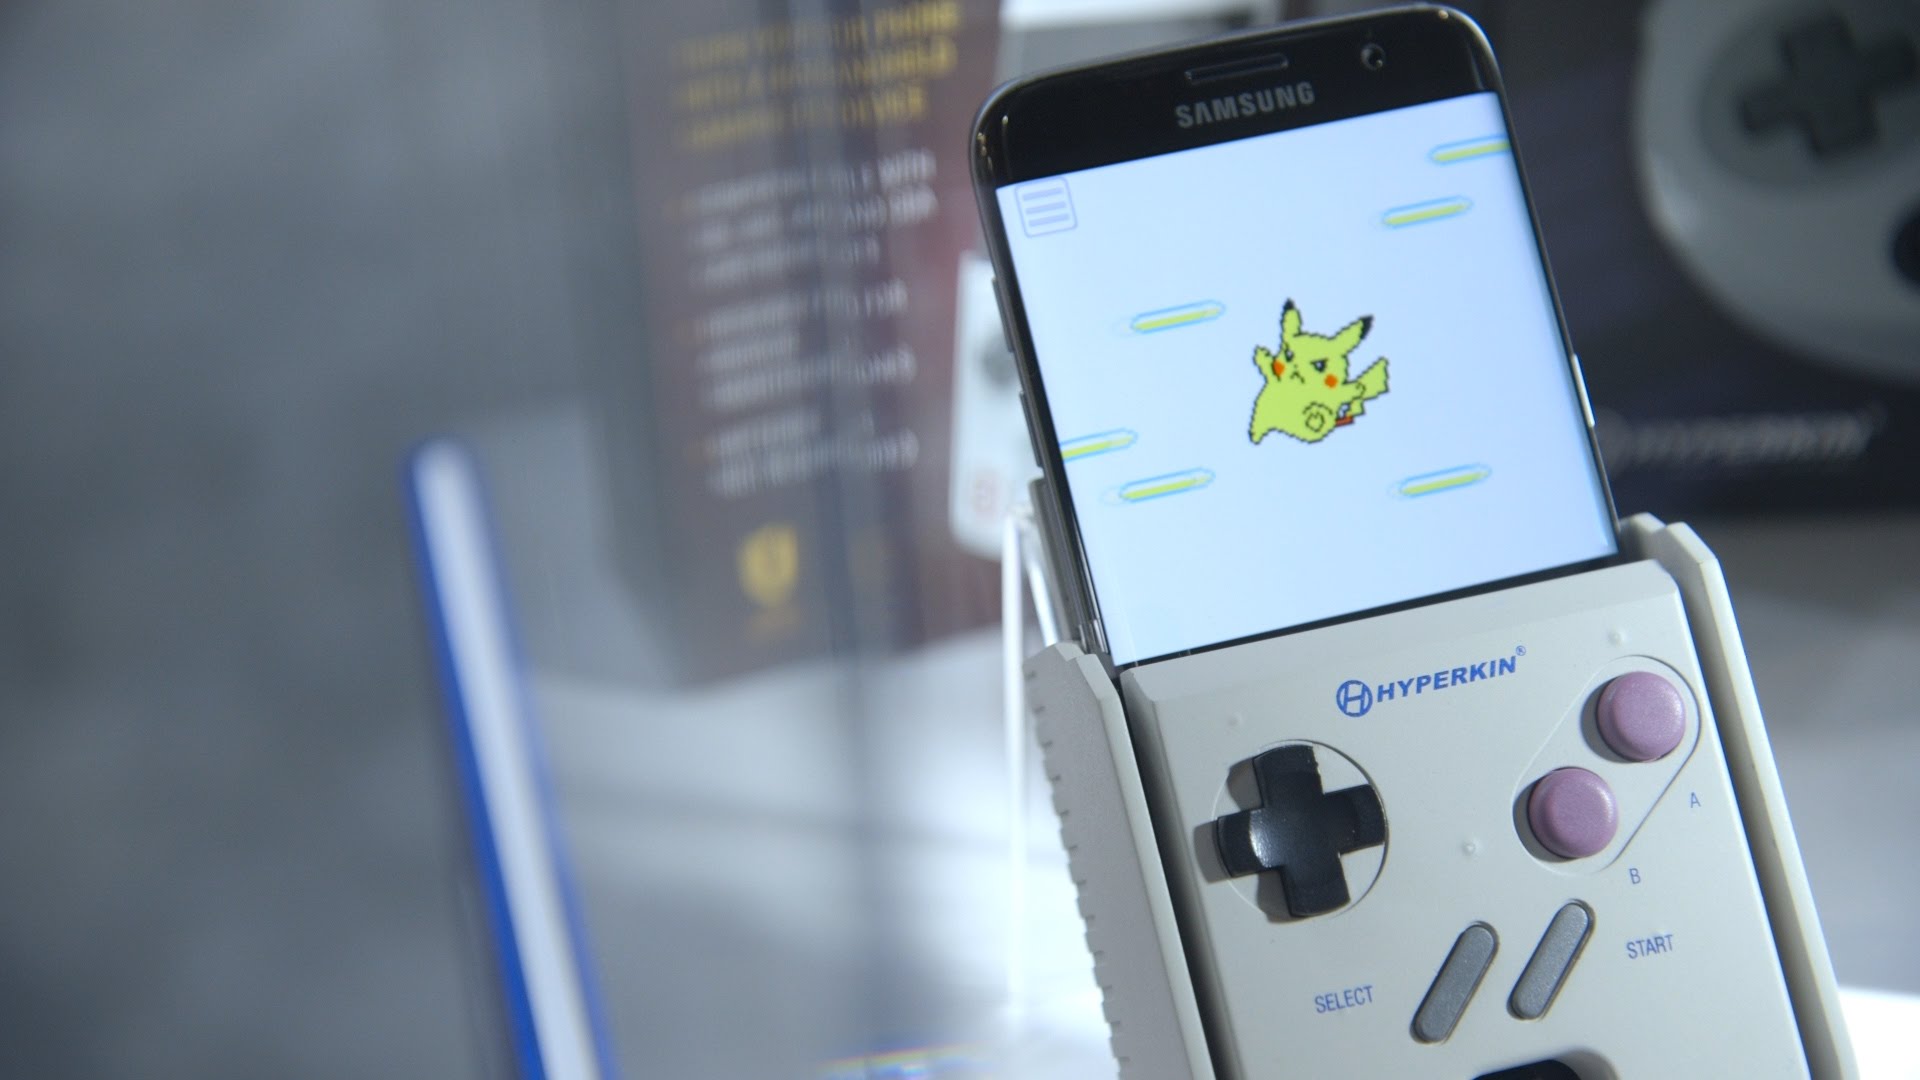 Trở về tuổi thơ với bộ phụ kiện Gameboy độc đáo cho smartphone